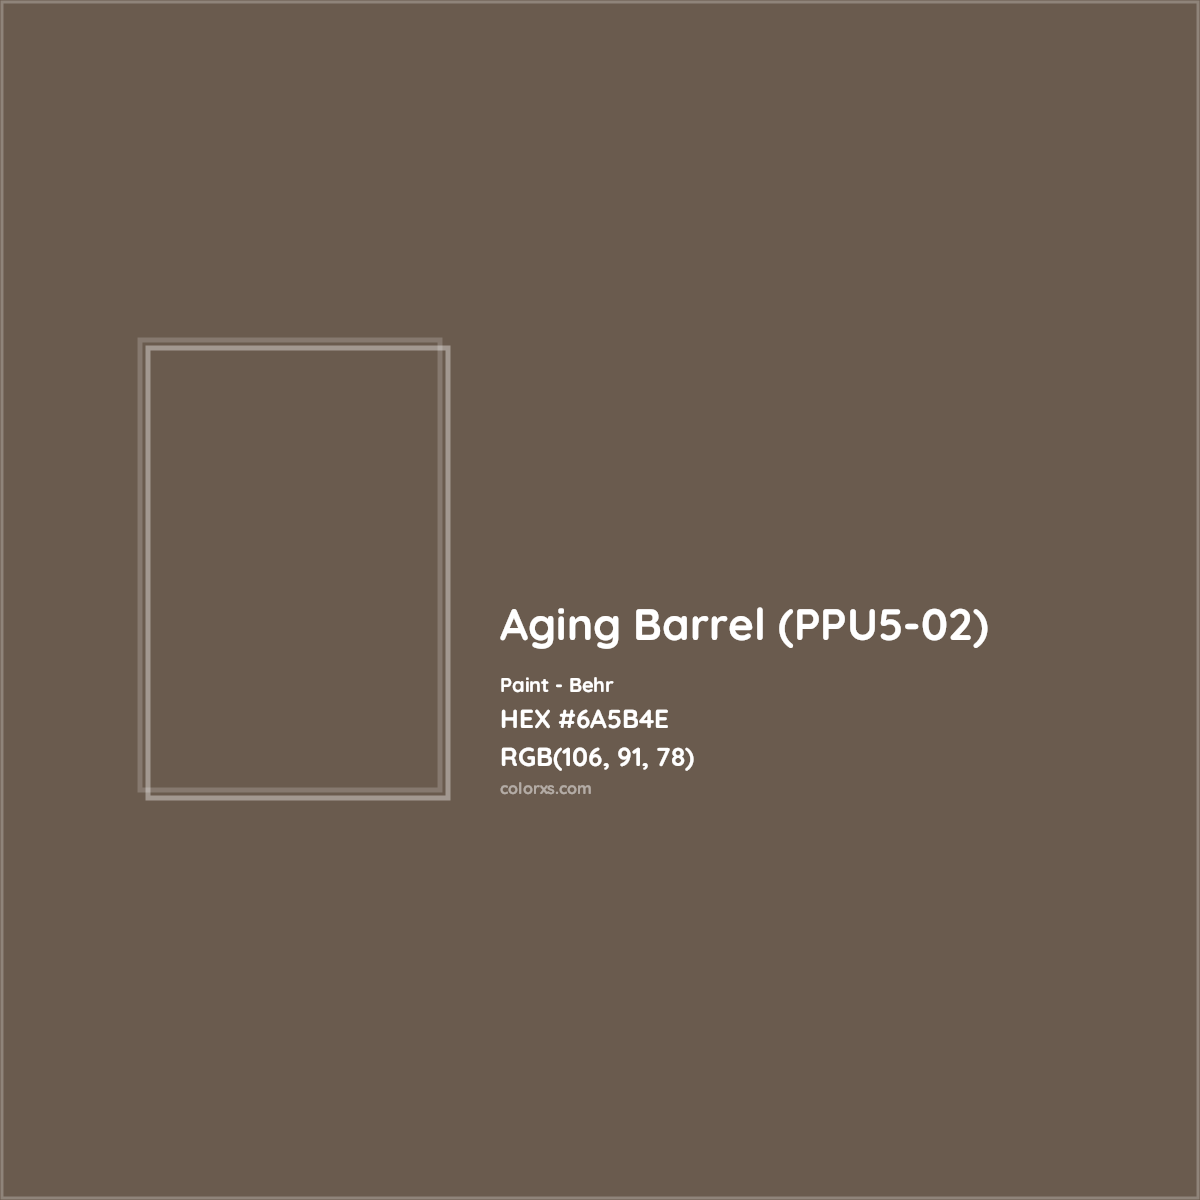 HEX #6A5B4E Aging Barrel (PPU5-02) Paint Behr - Color Code